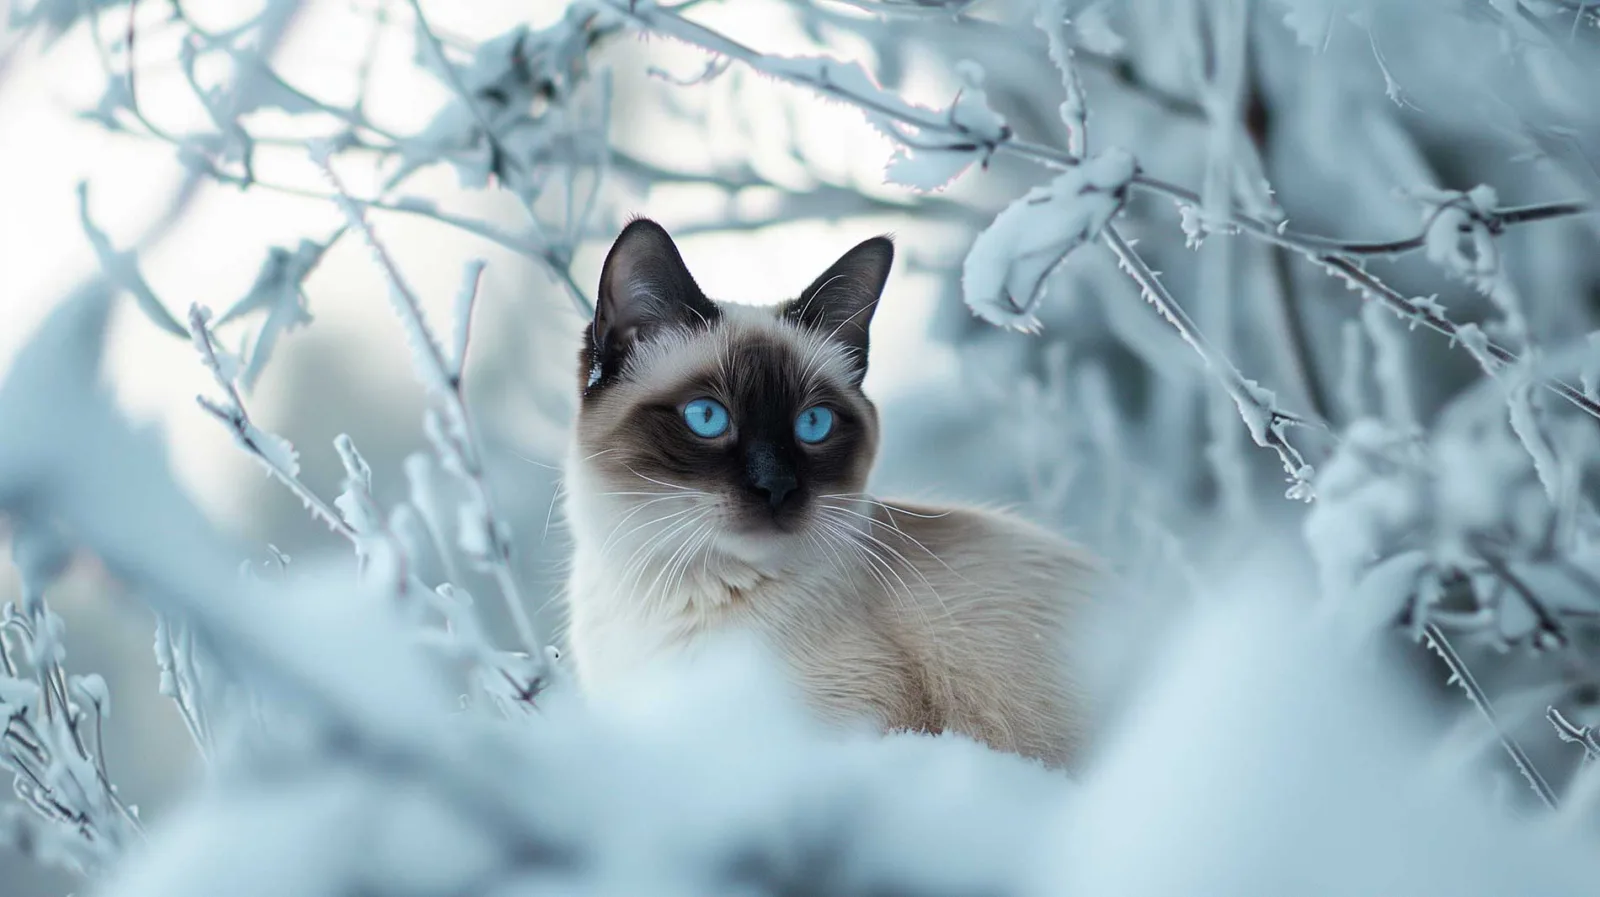 Eine Siamkatze mit auffallend blauen Augen, cremefarbenem Fell, dunklen Gesichtszügen und Ohren sitzt inmitten einer verschneiten Winterlandschaft. Der Blick der Katze ist konzentriert und wachsam. Der Hintergrund besteht aus schneebedeckten Ästen und eisigen Zweigen, die die kalte, ruhige Atmosphäre des Bildes noch verstärken.